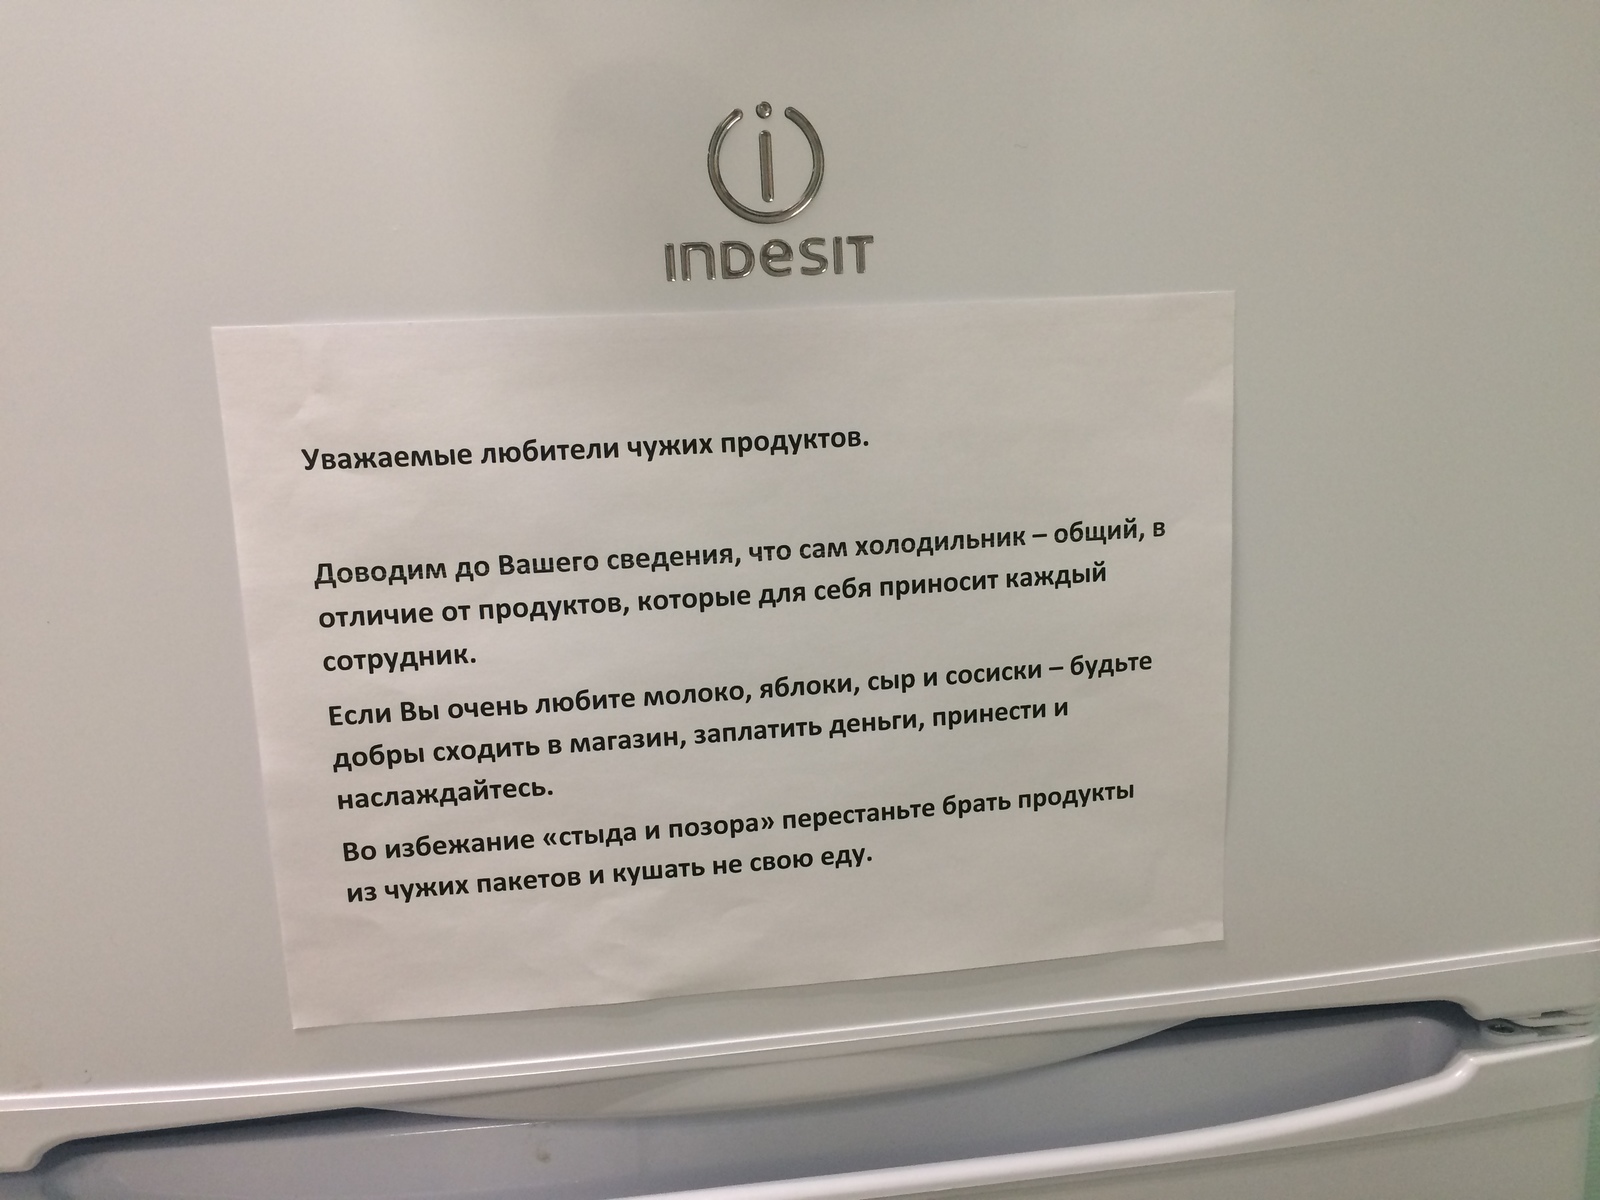 Объявление на холодильник в офисе